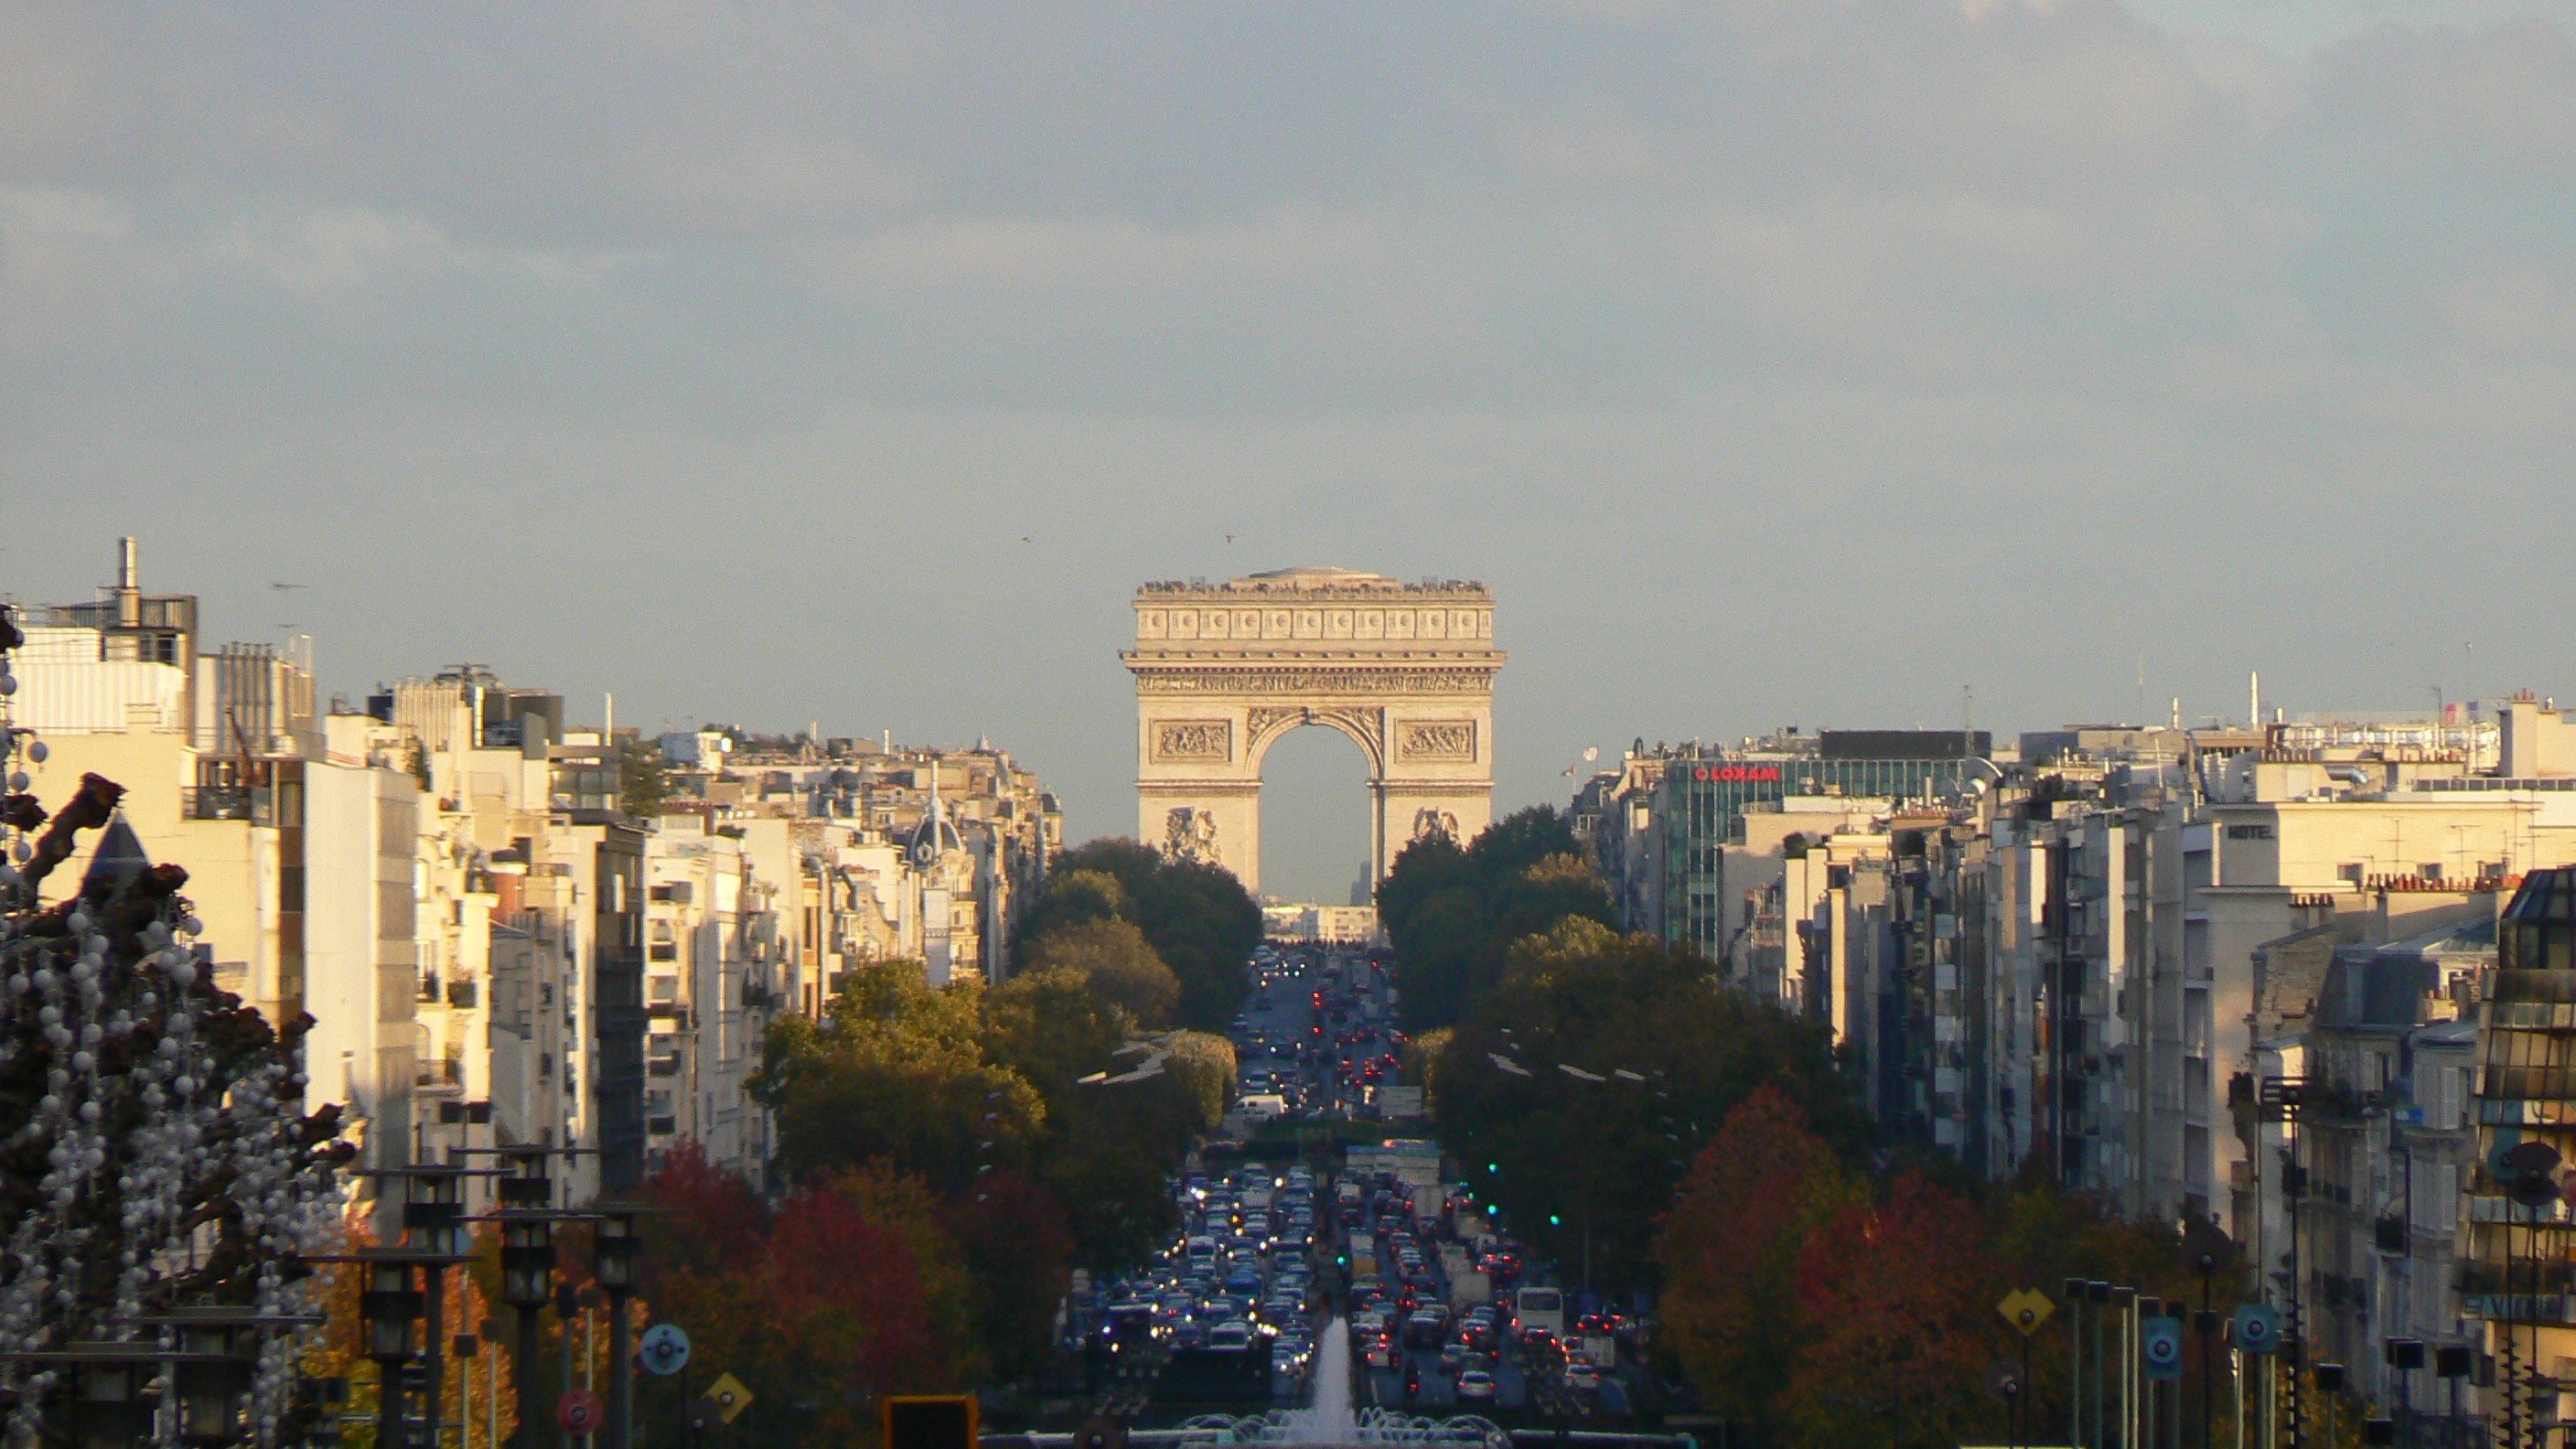 General 2816x1584 clouds trees Paris France Arc de Triomphe